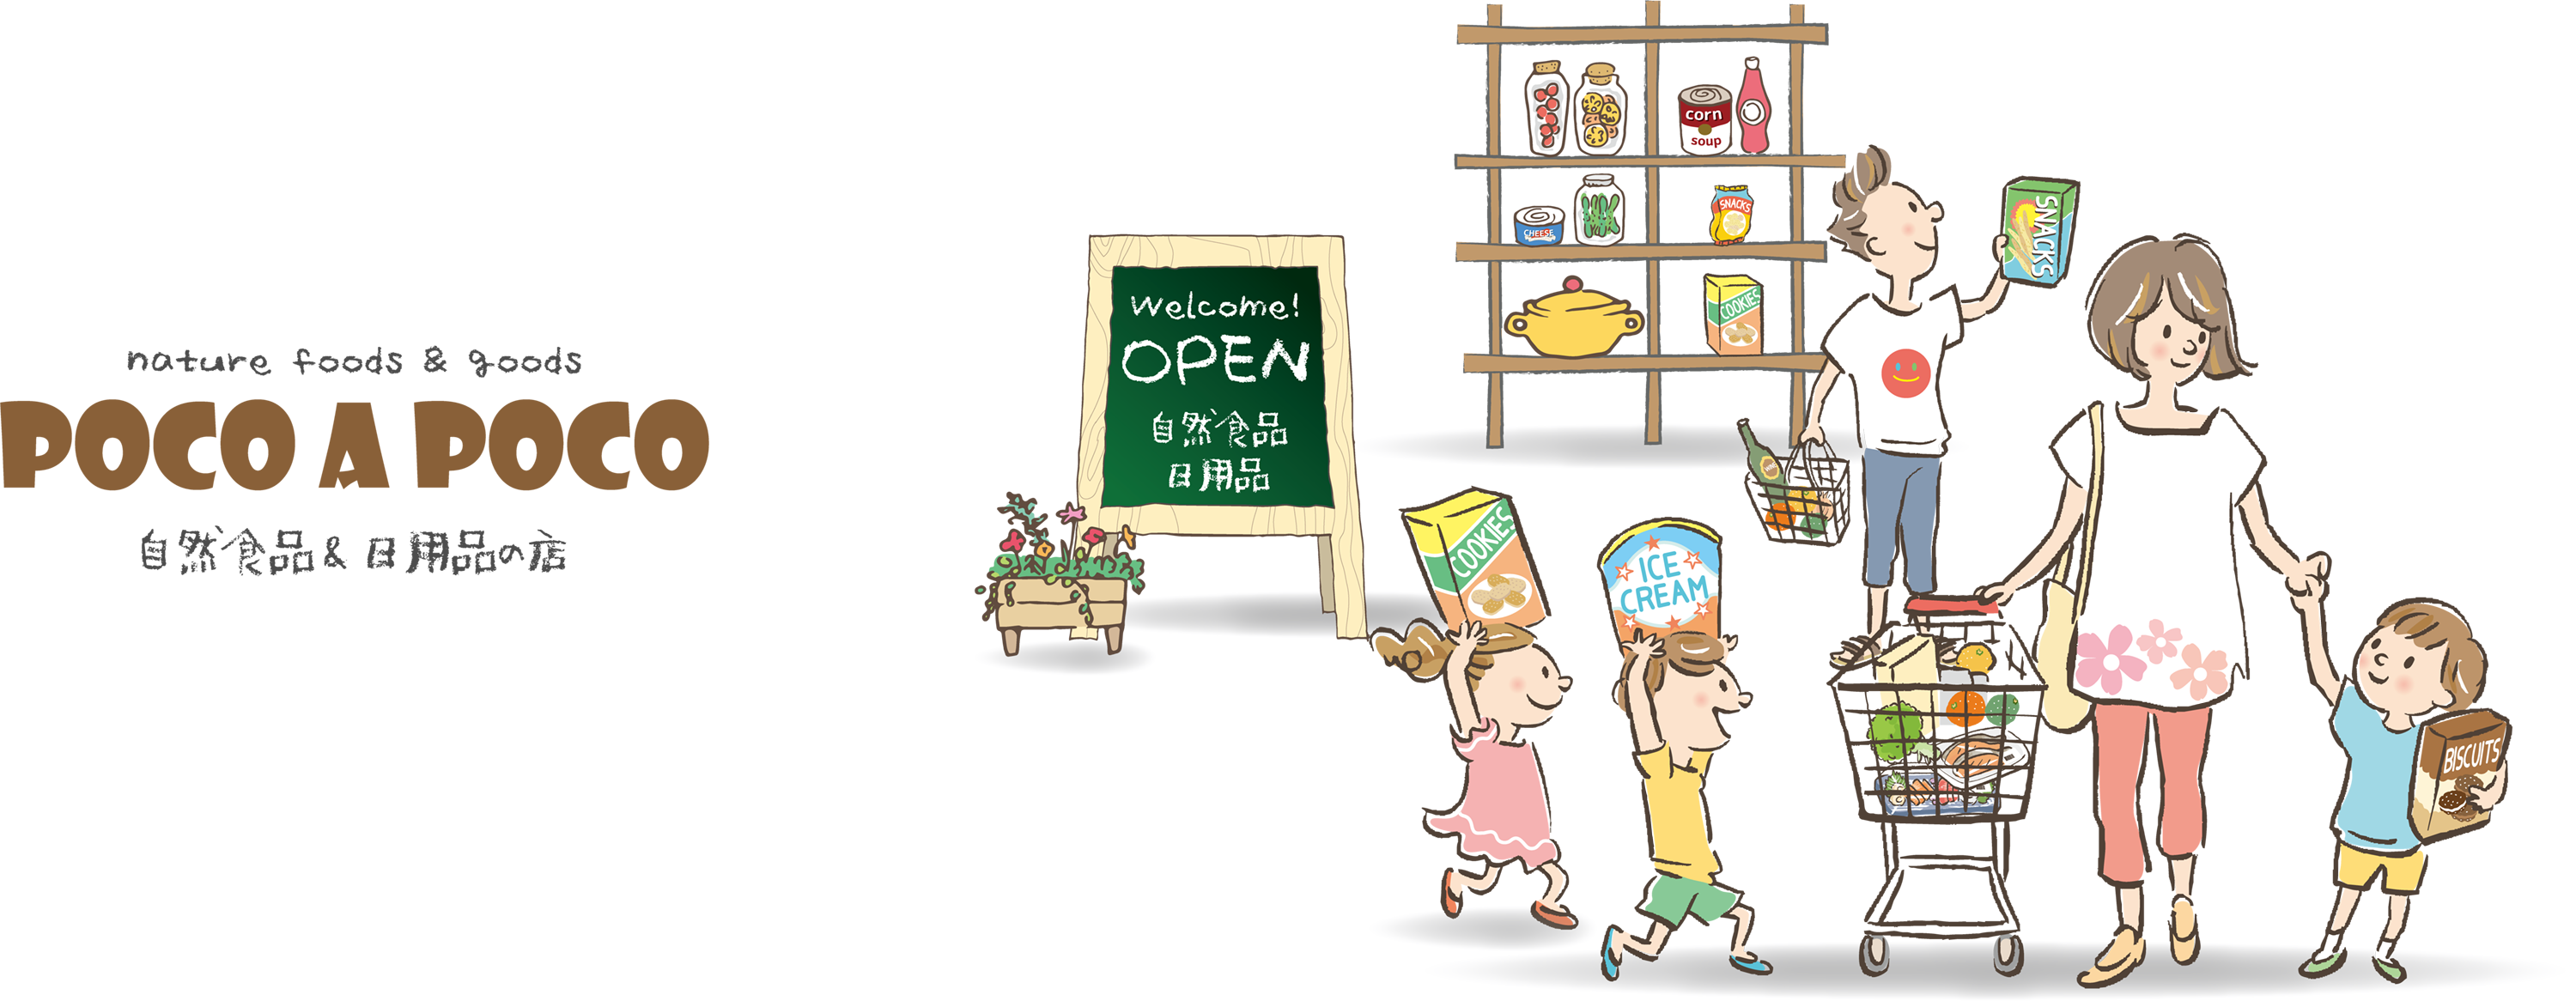 石垣島の自然食品日用品の店「ポコアポコ」